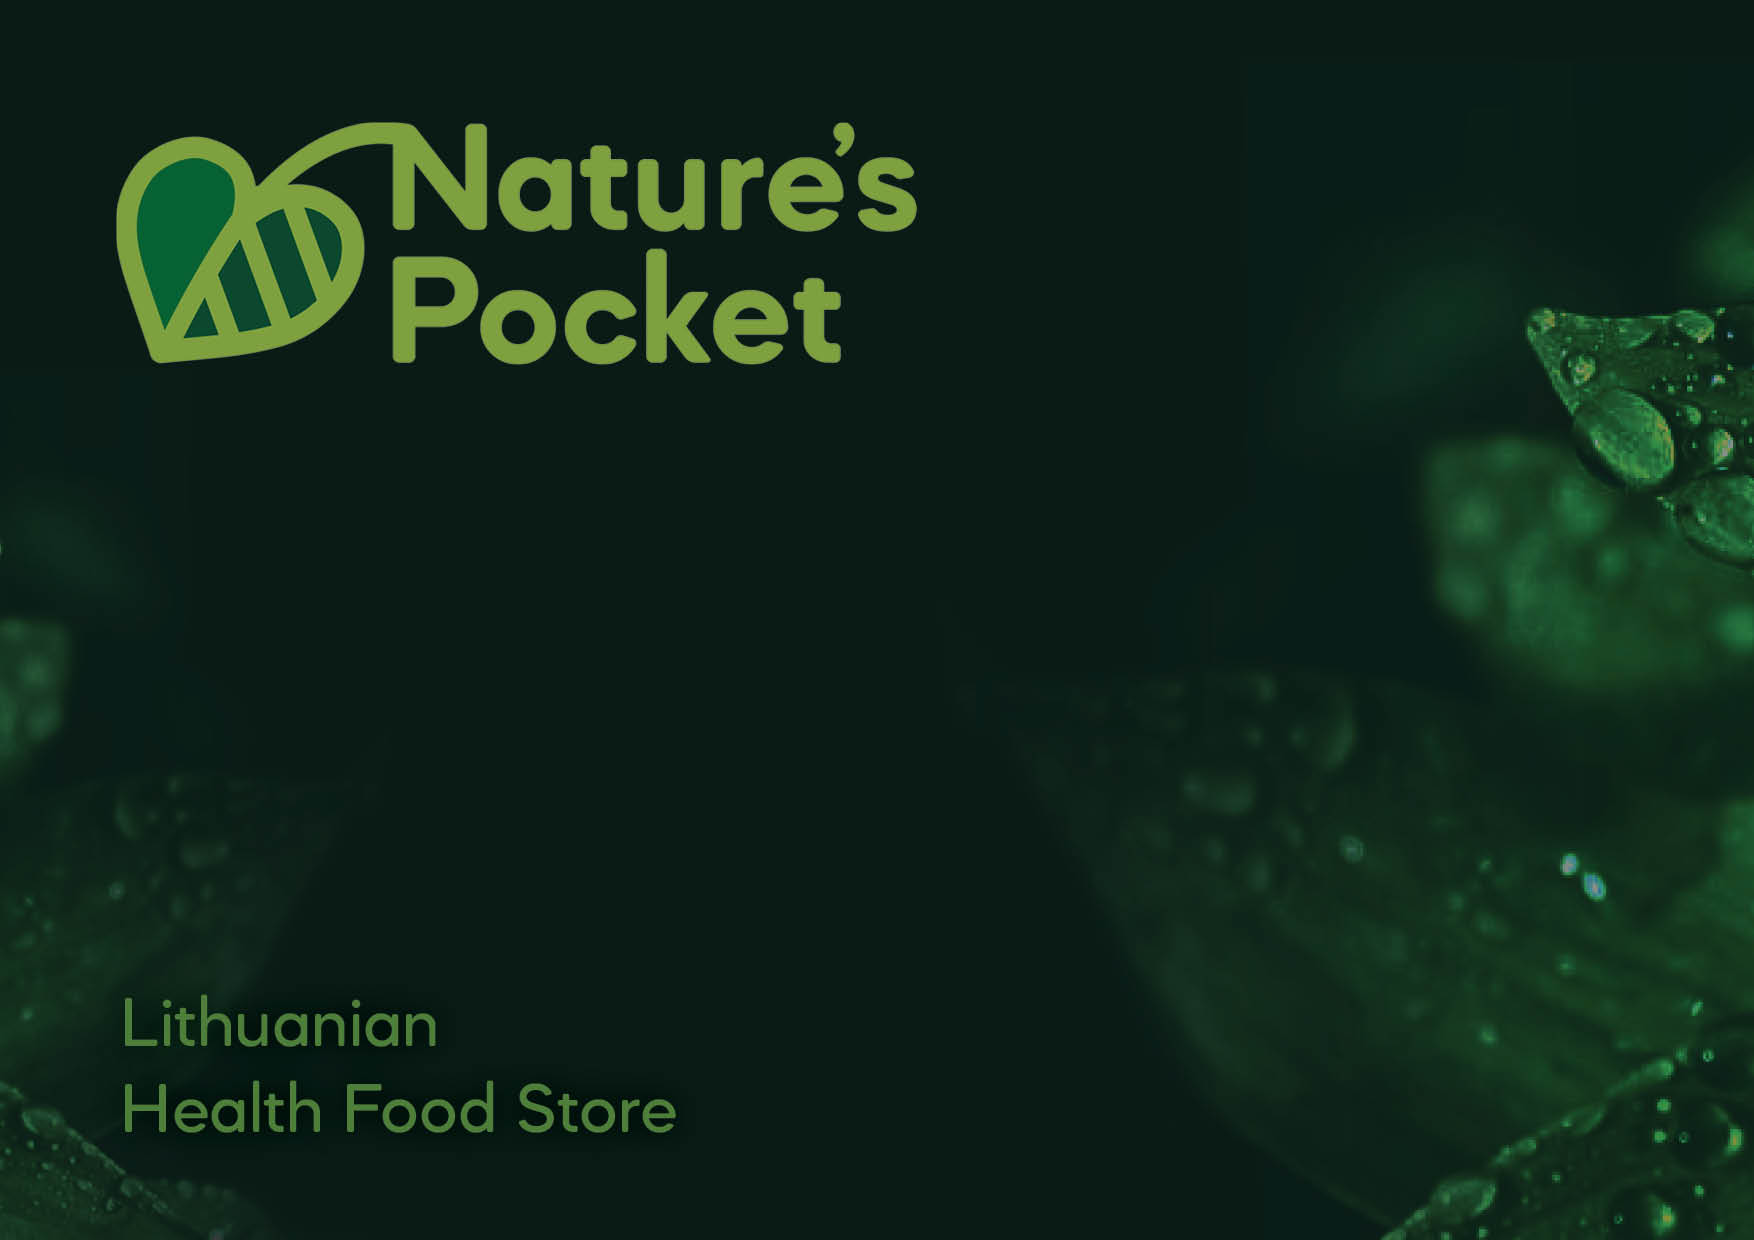 Natures Pocket